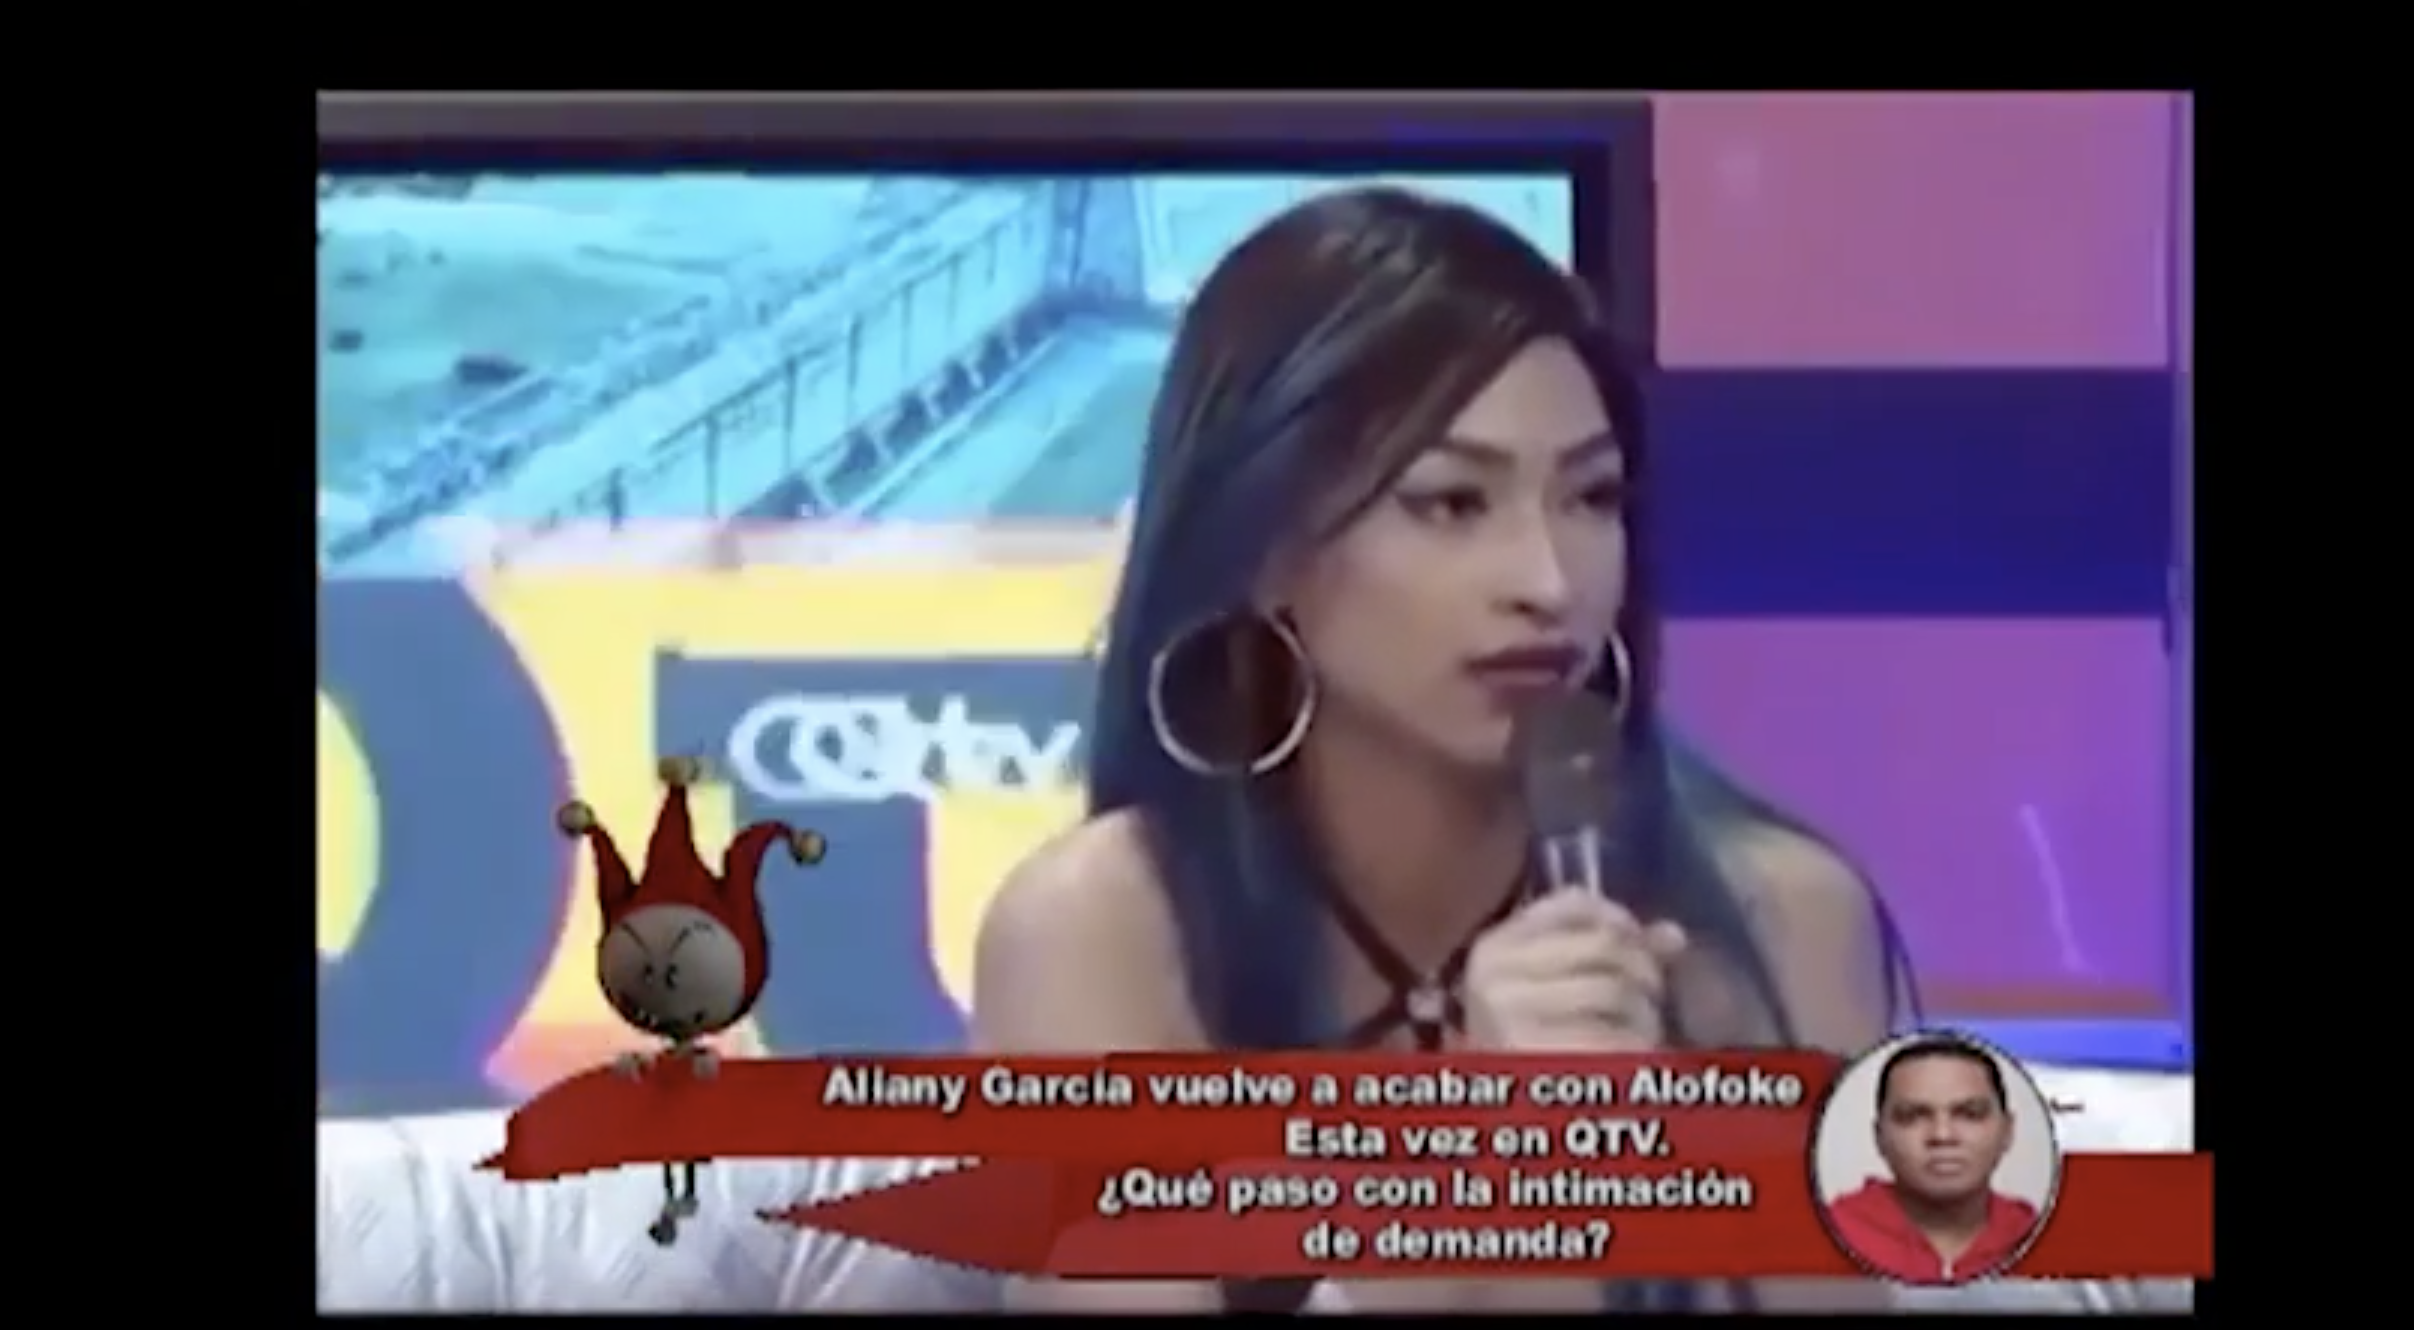 Aliany Garcia Vuelve A Acabar Con Alofoke Esta Ves En El Programa QTV Comentan Los Cirqueros